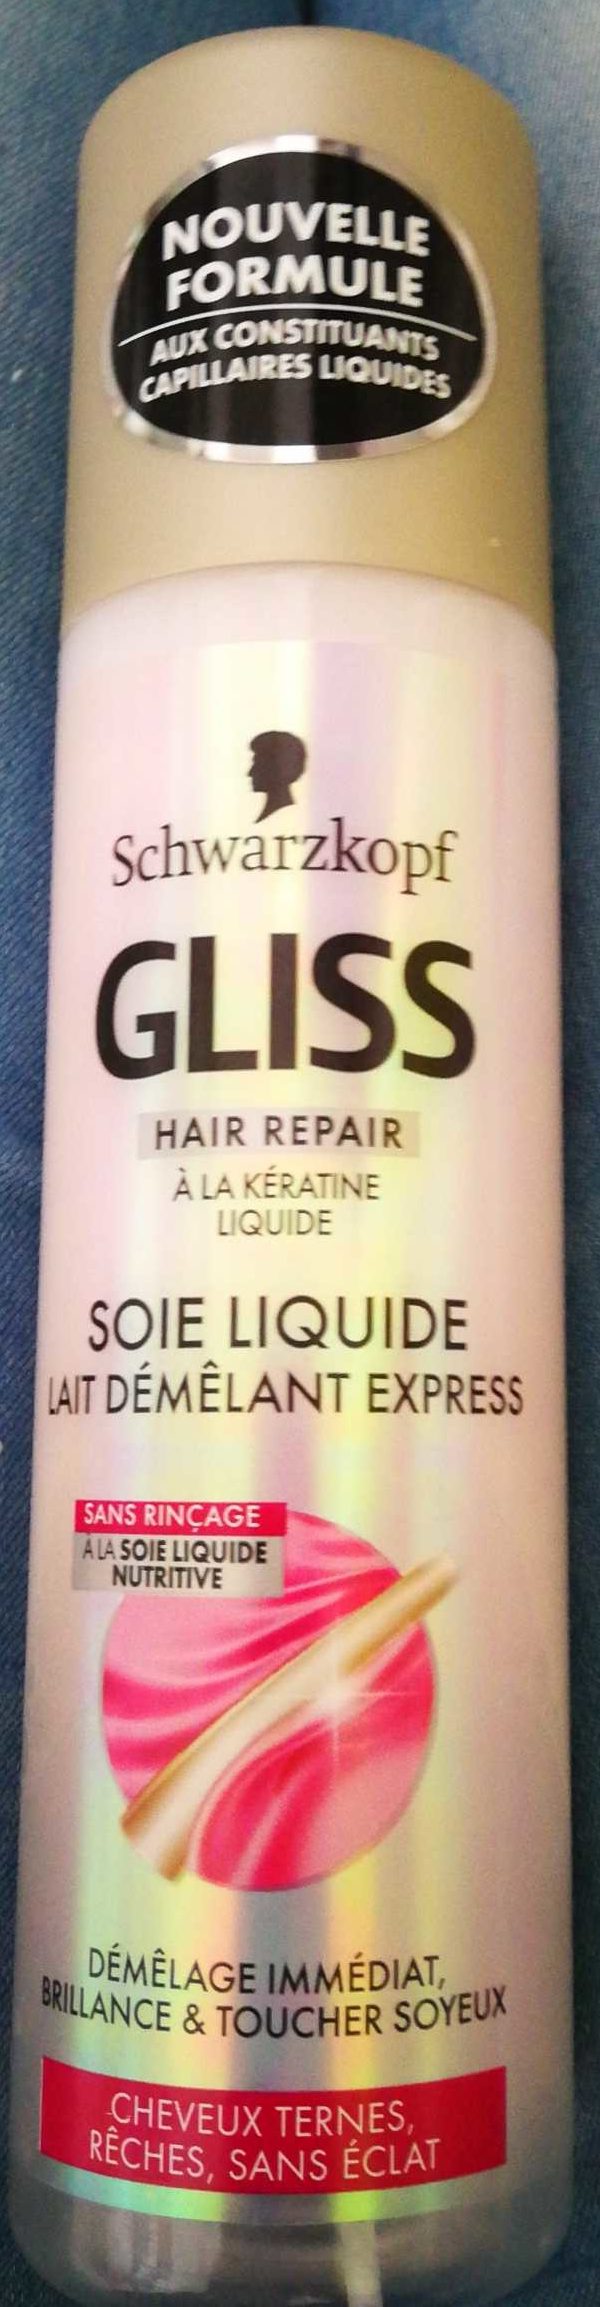 Gliss Soie liquide - Produit - fr